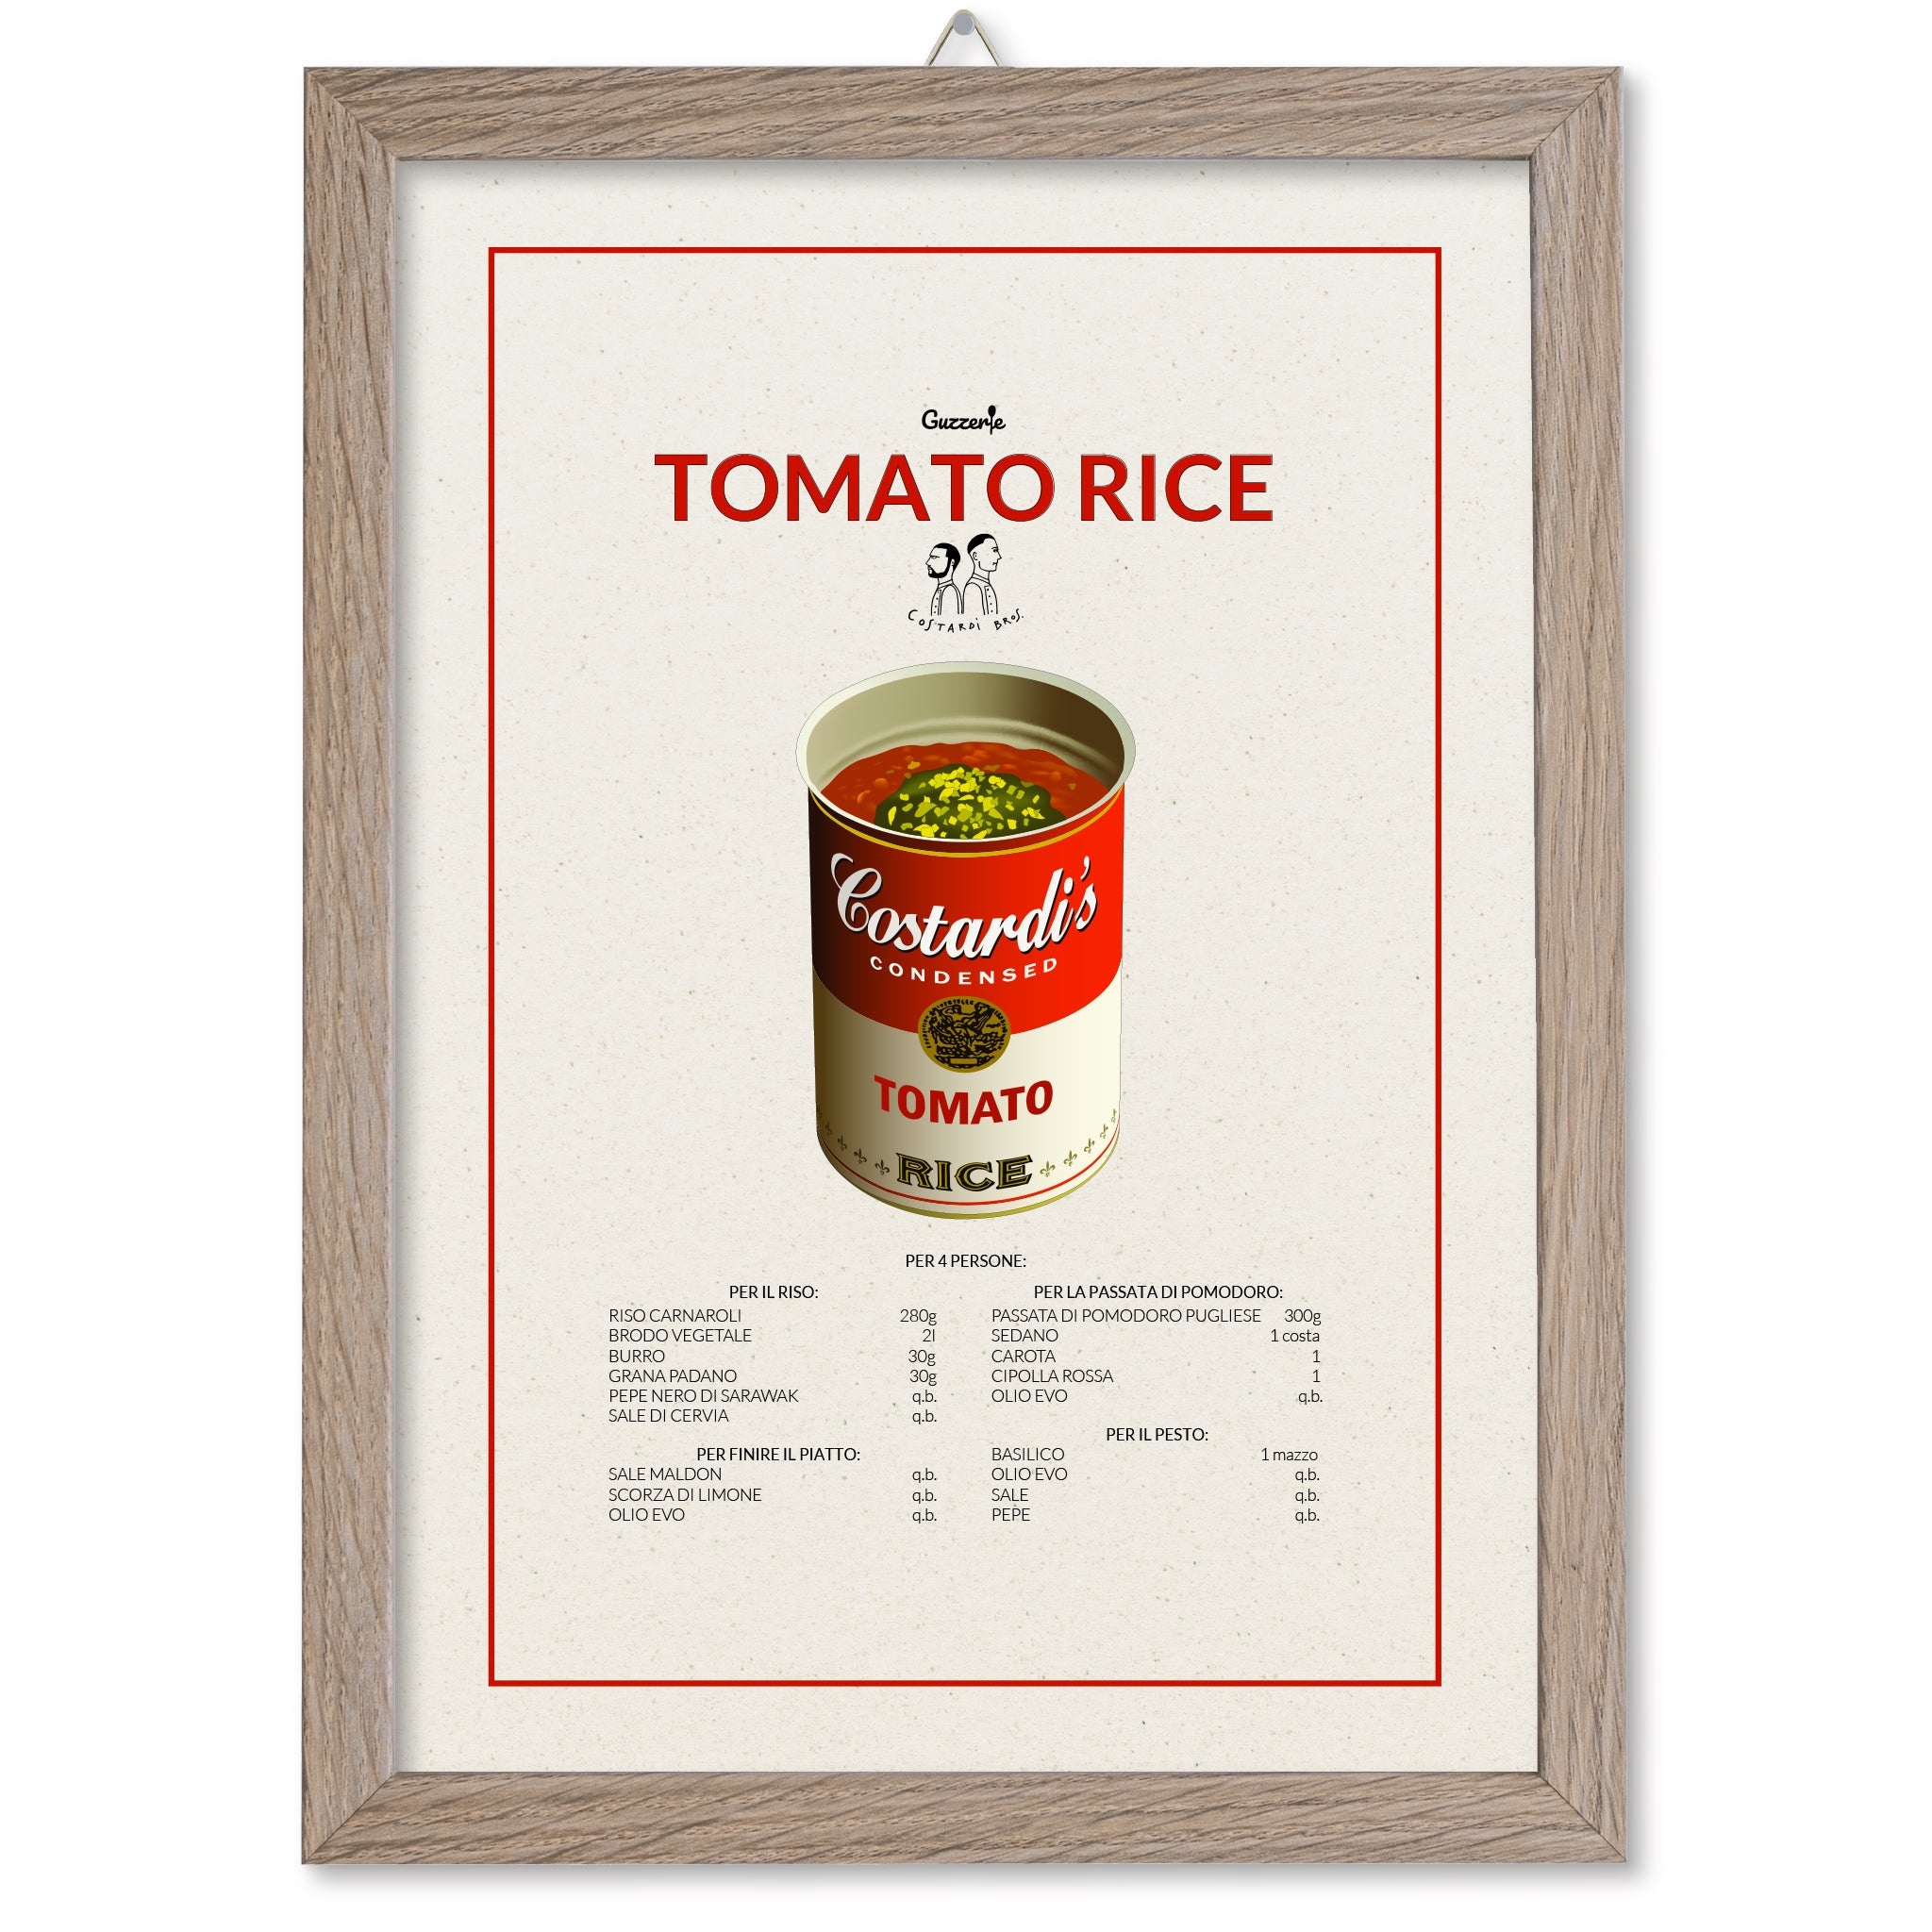 Costardi Bro's Poster Tomato Rice di Guzzerie